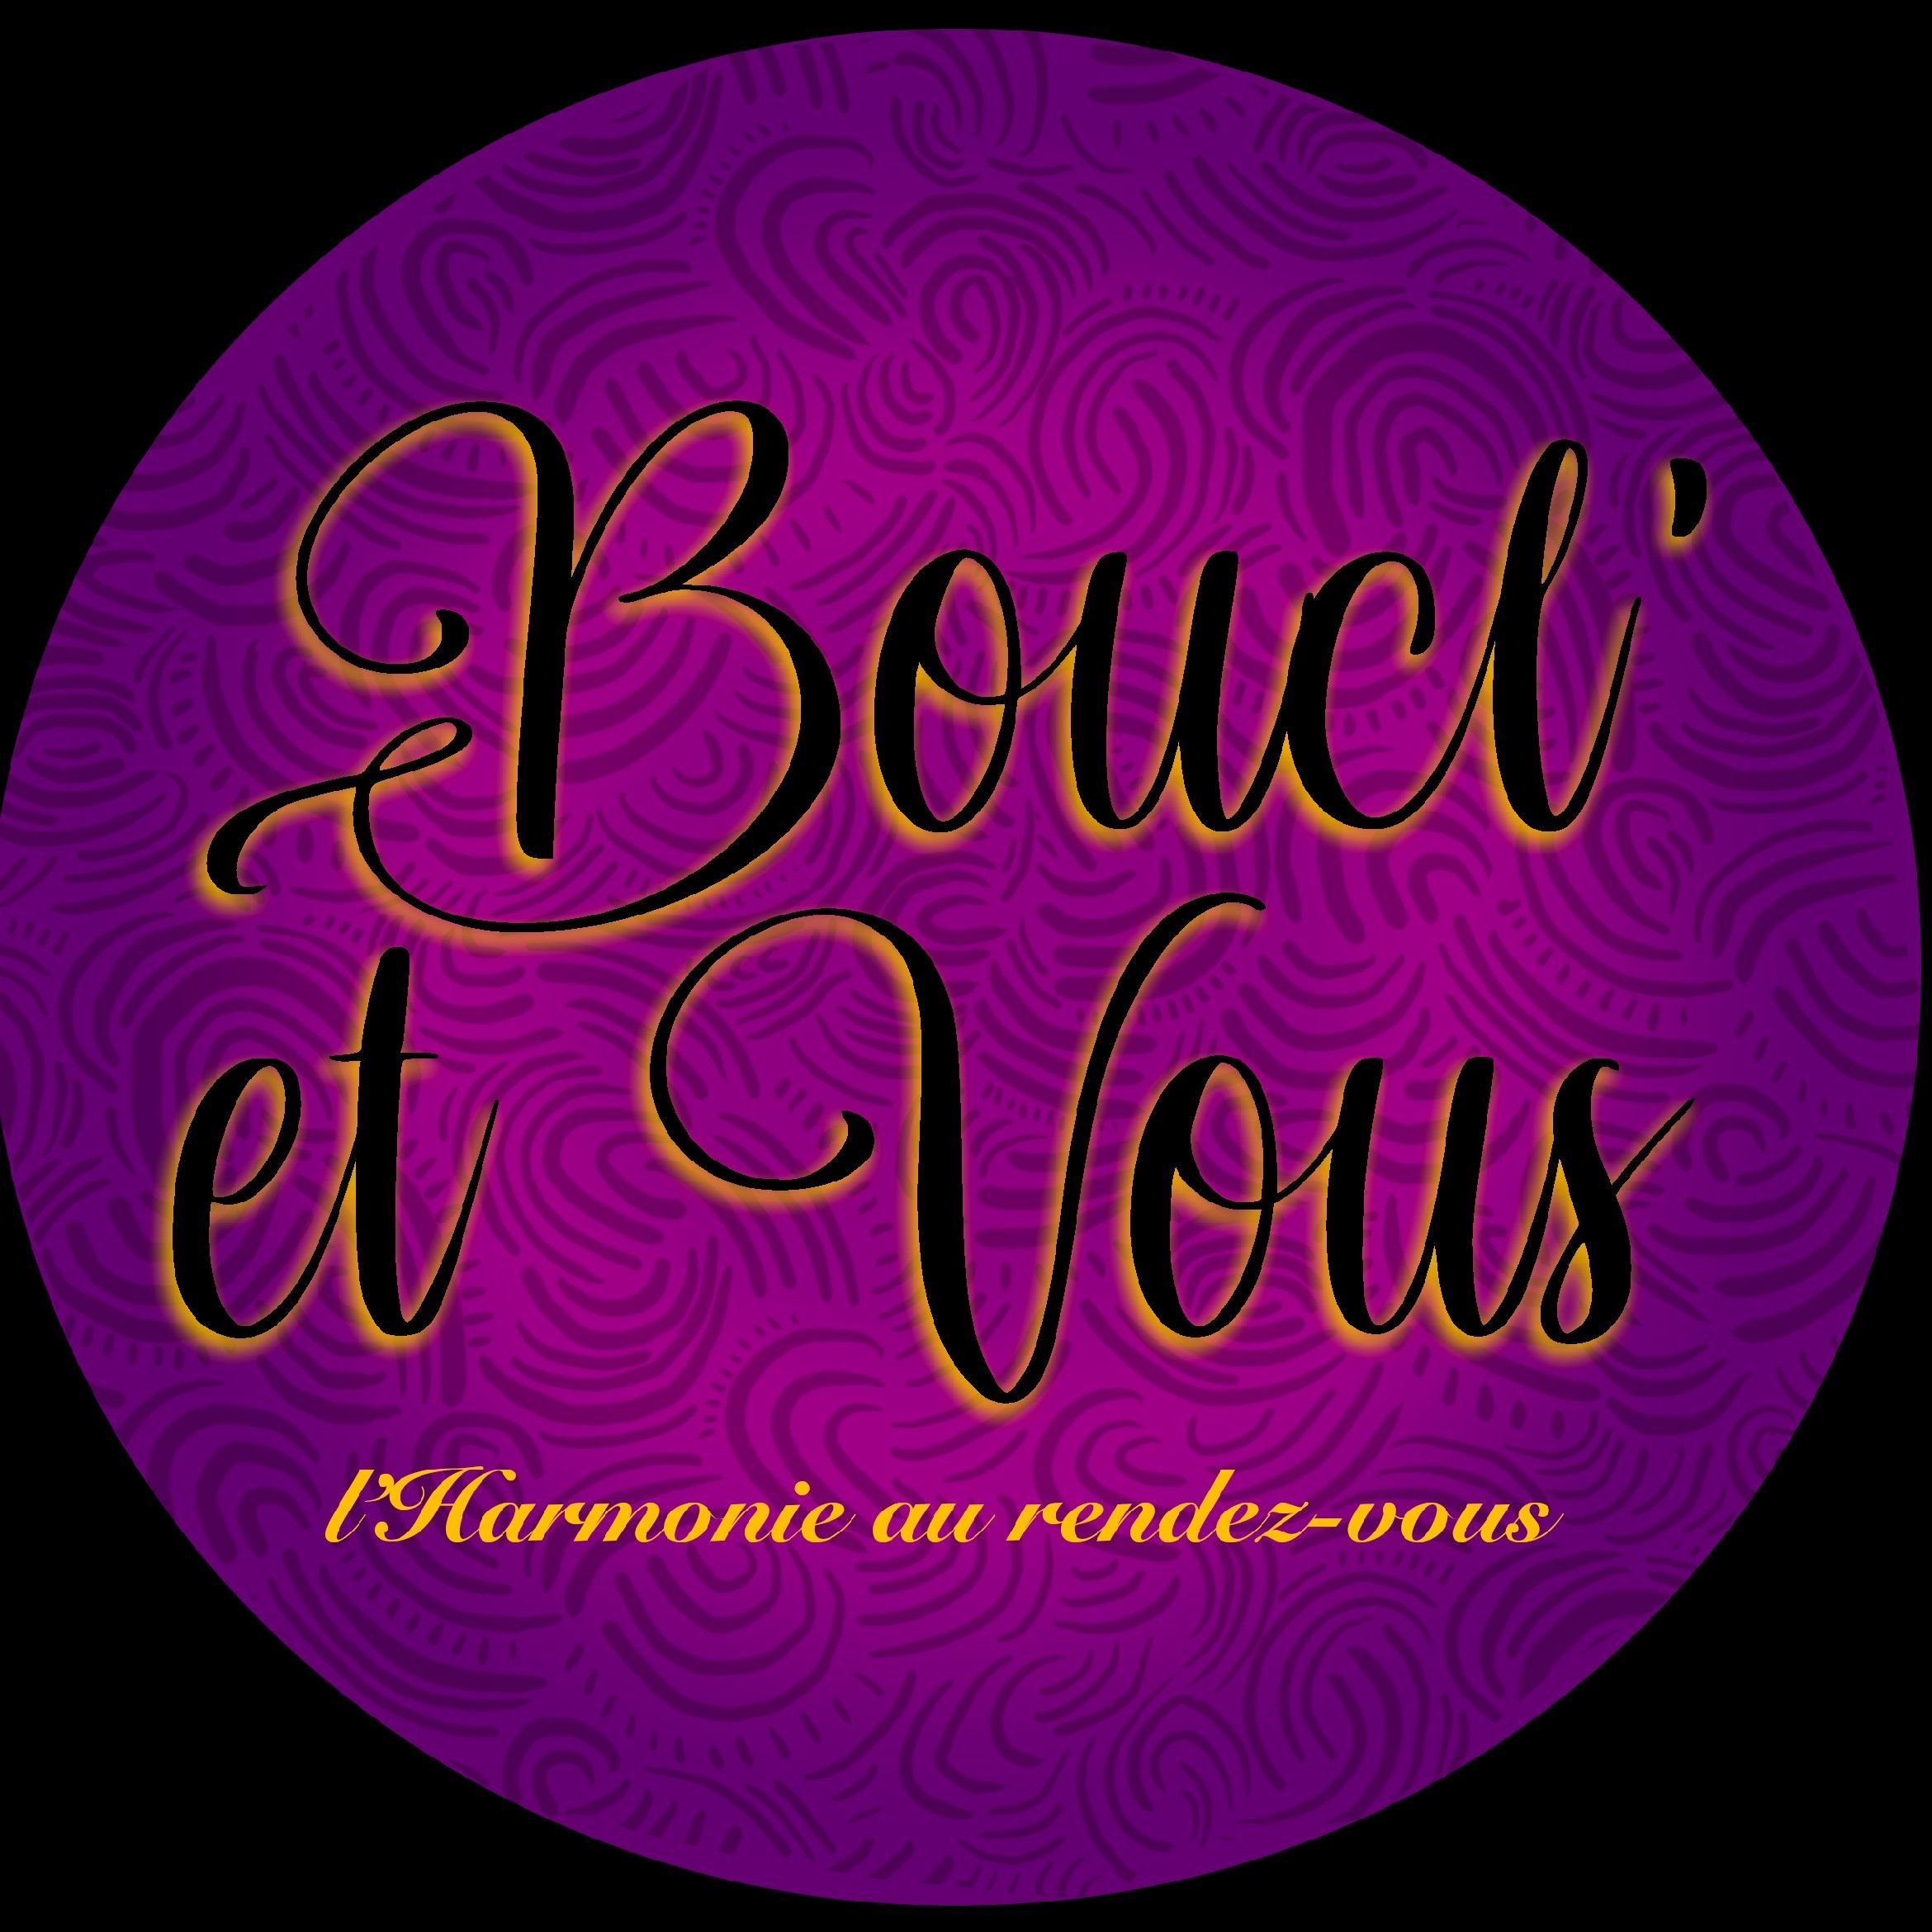 Boucl'Et Vous, 91300, Massy